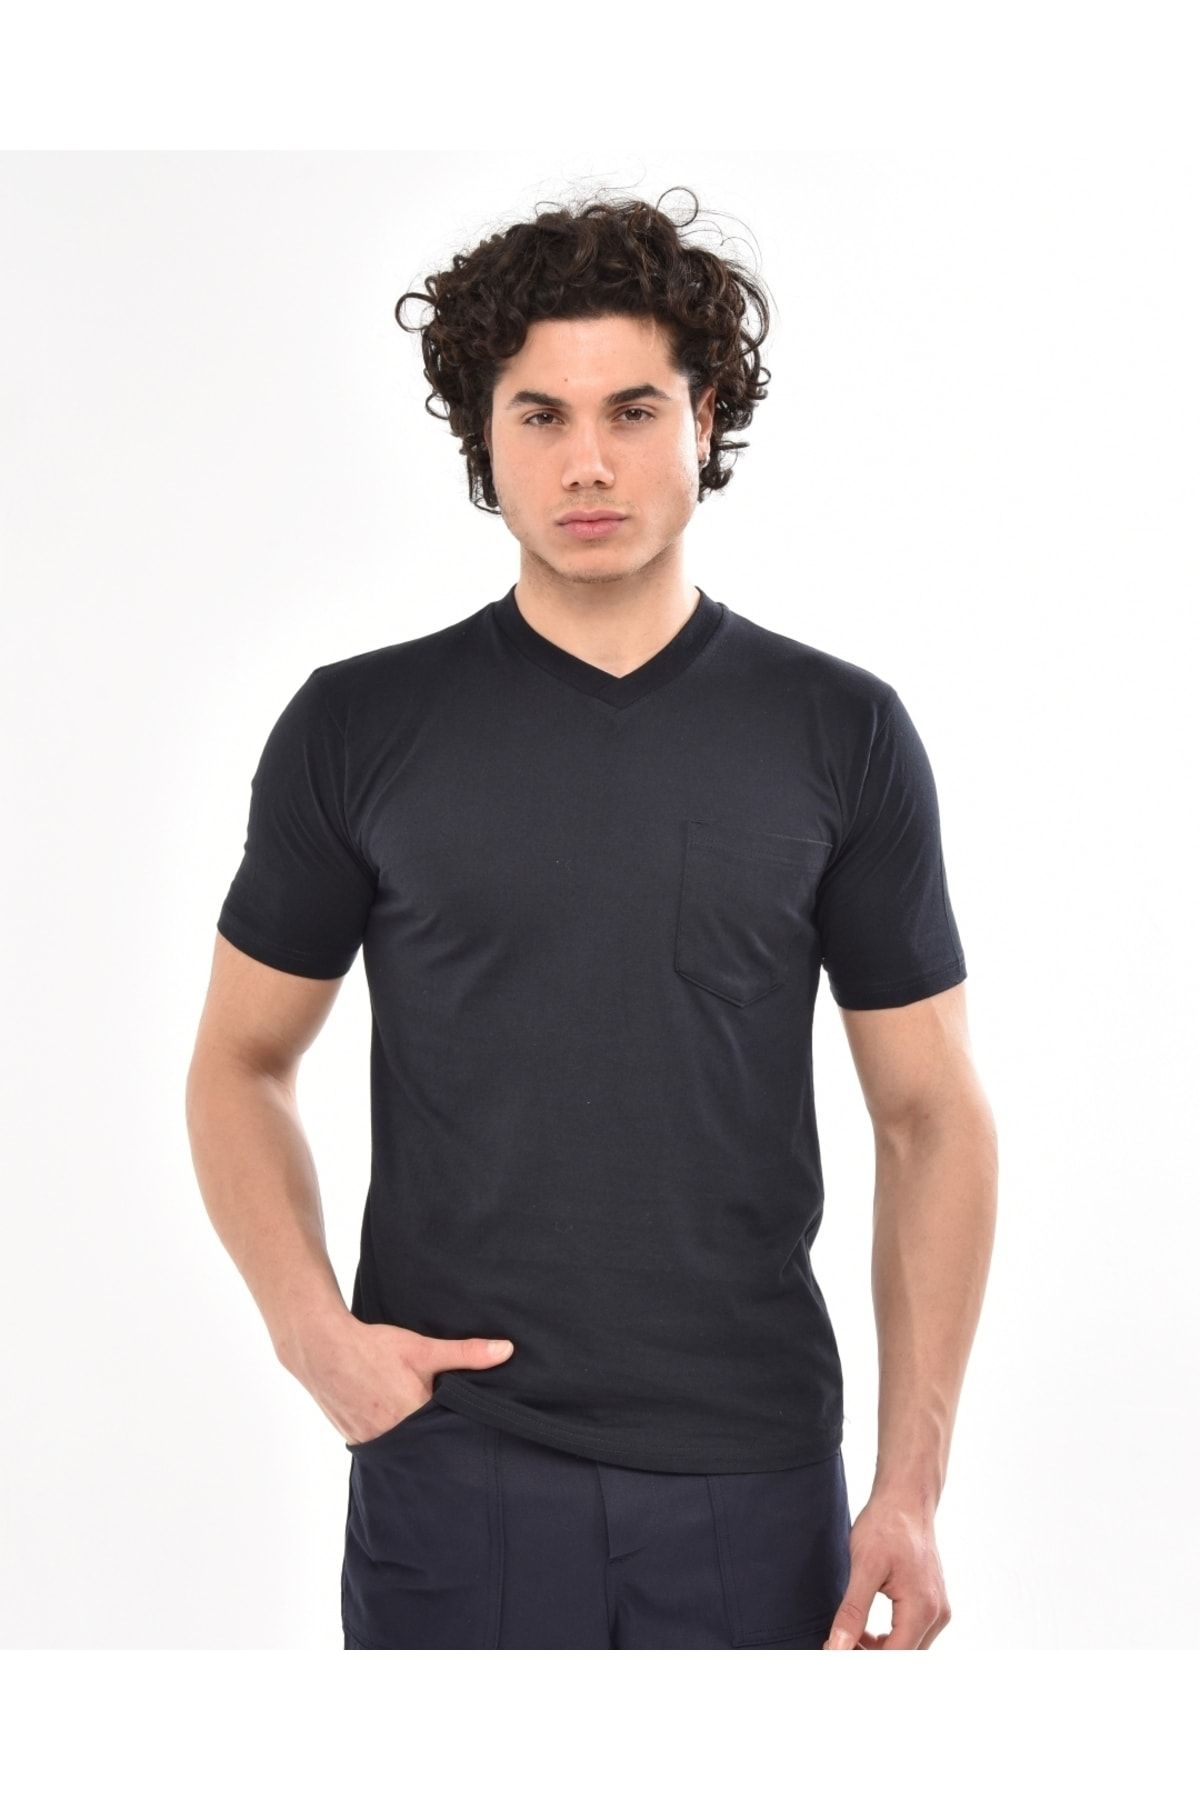 Çamdalı İş Elbiseleri V Yaka Lacivert Kısa Kollu Süprem Iş Tişörtü - V Yaka T-shirt